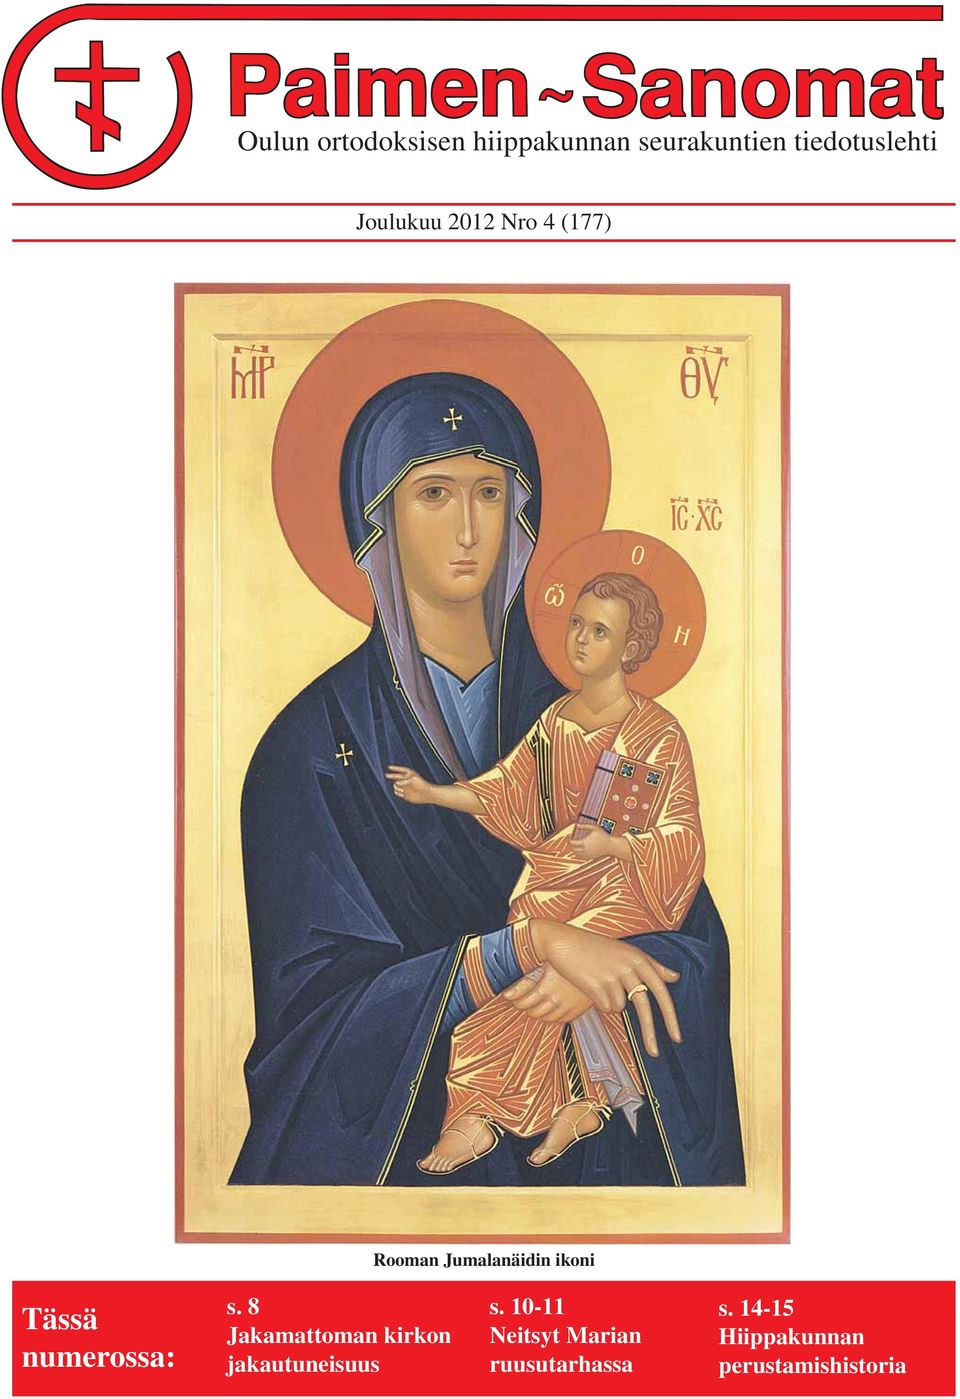 2. s. 8 s.4. s. 10-11 Vilho Jakamattoman Huttu kirkon Tyhjän haudan Neitsyt Marian